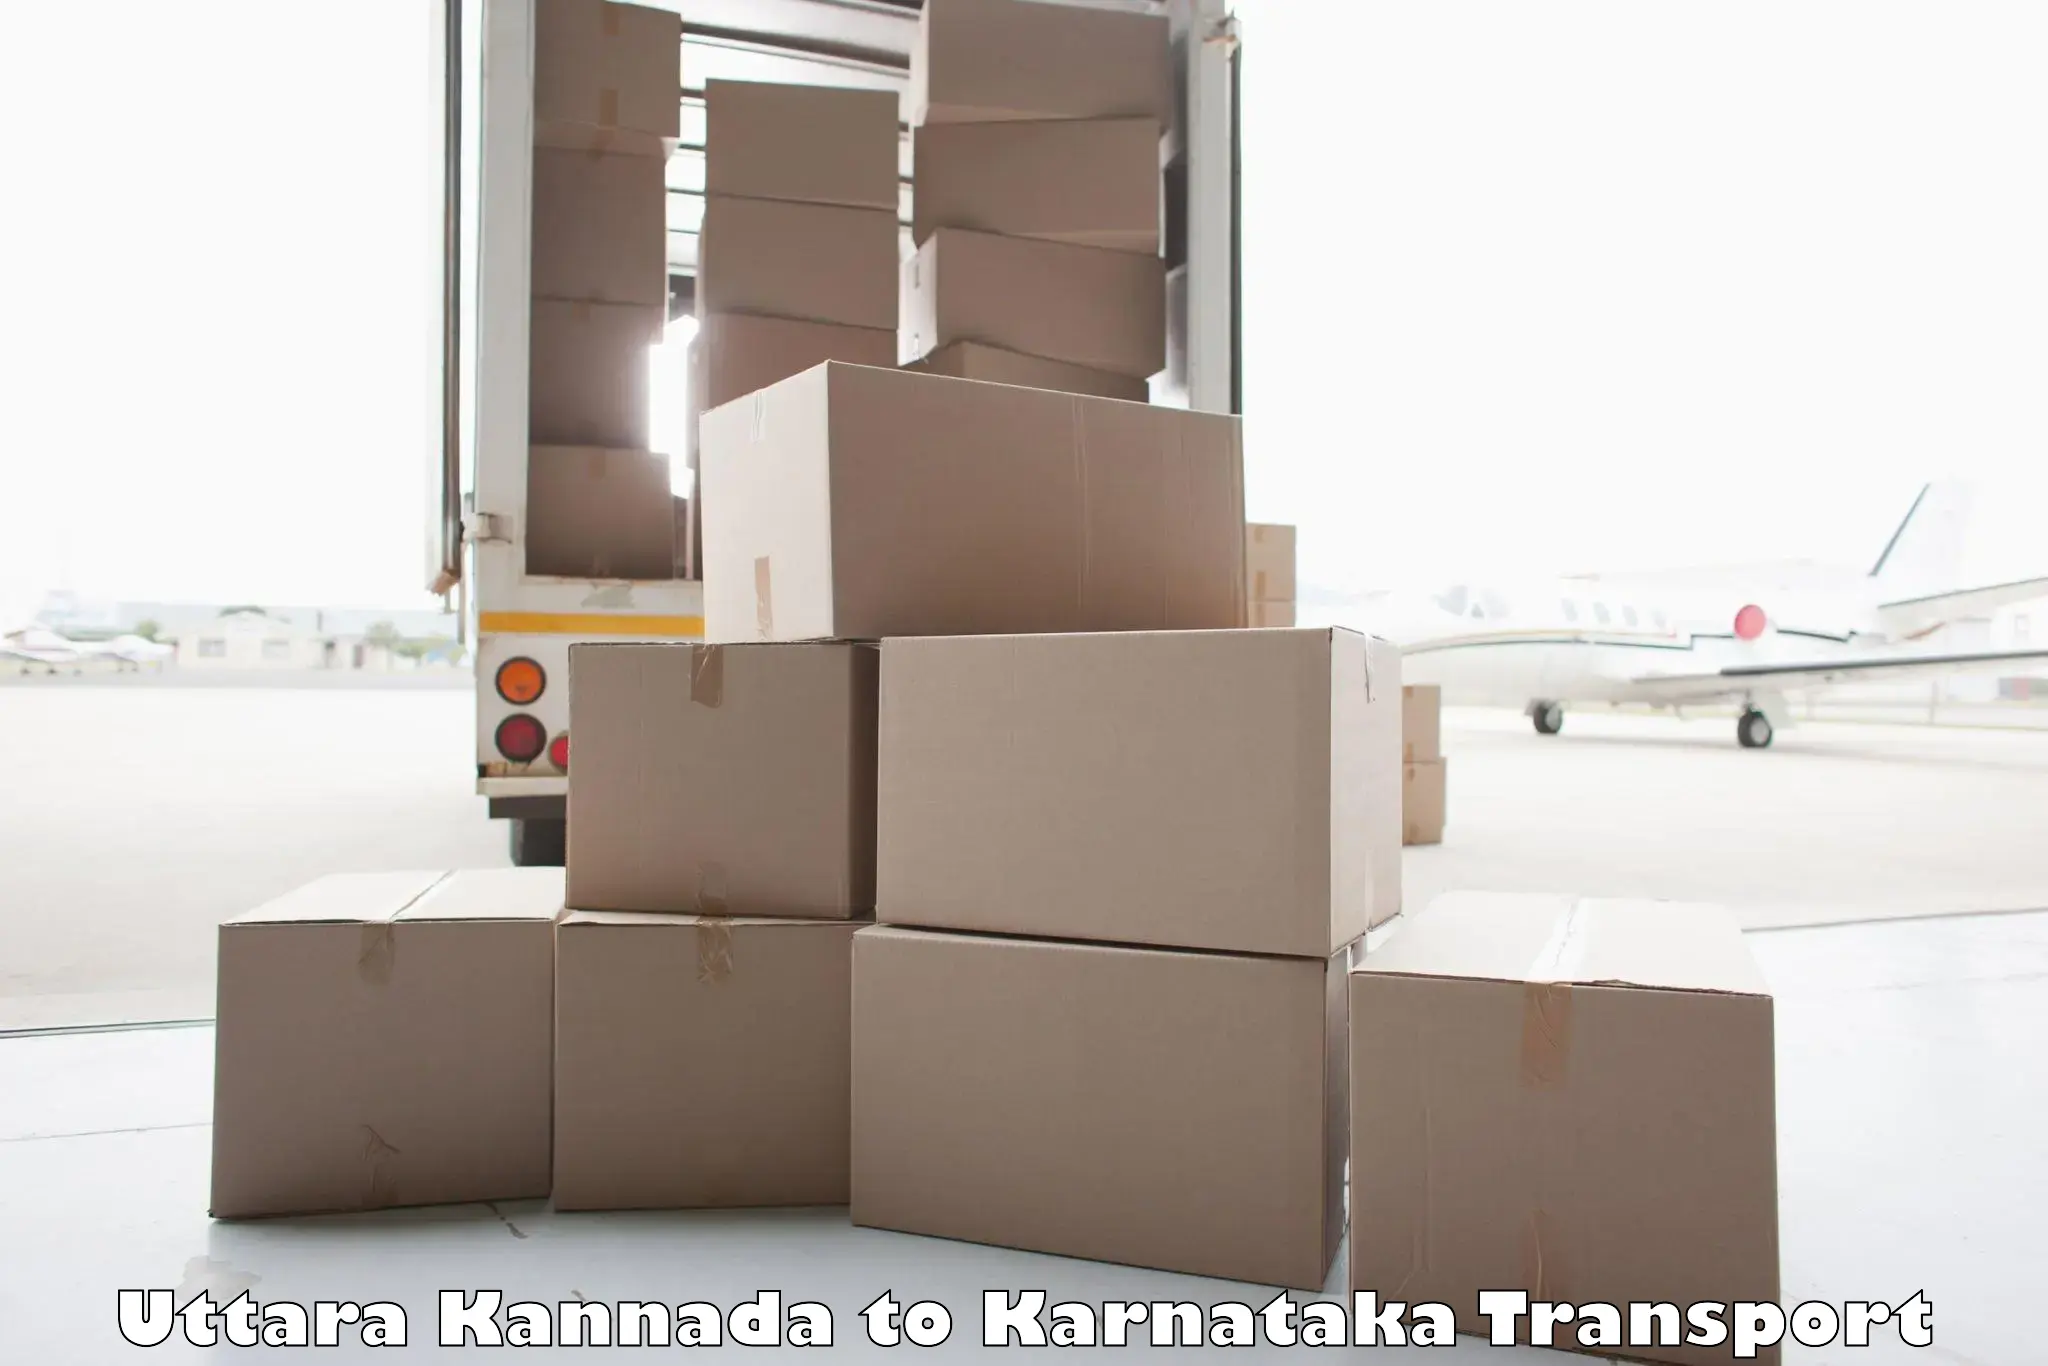 Land transport services Uttara Kannada to Toranagallu